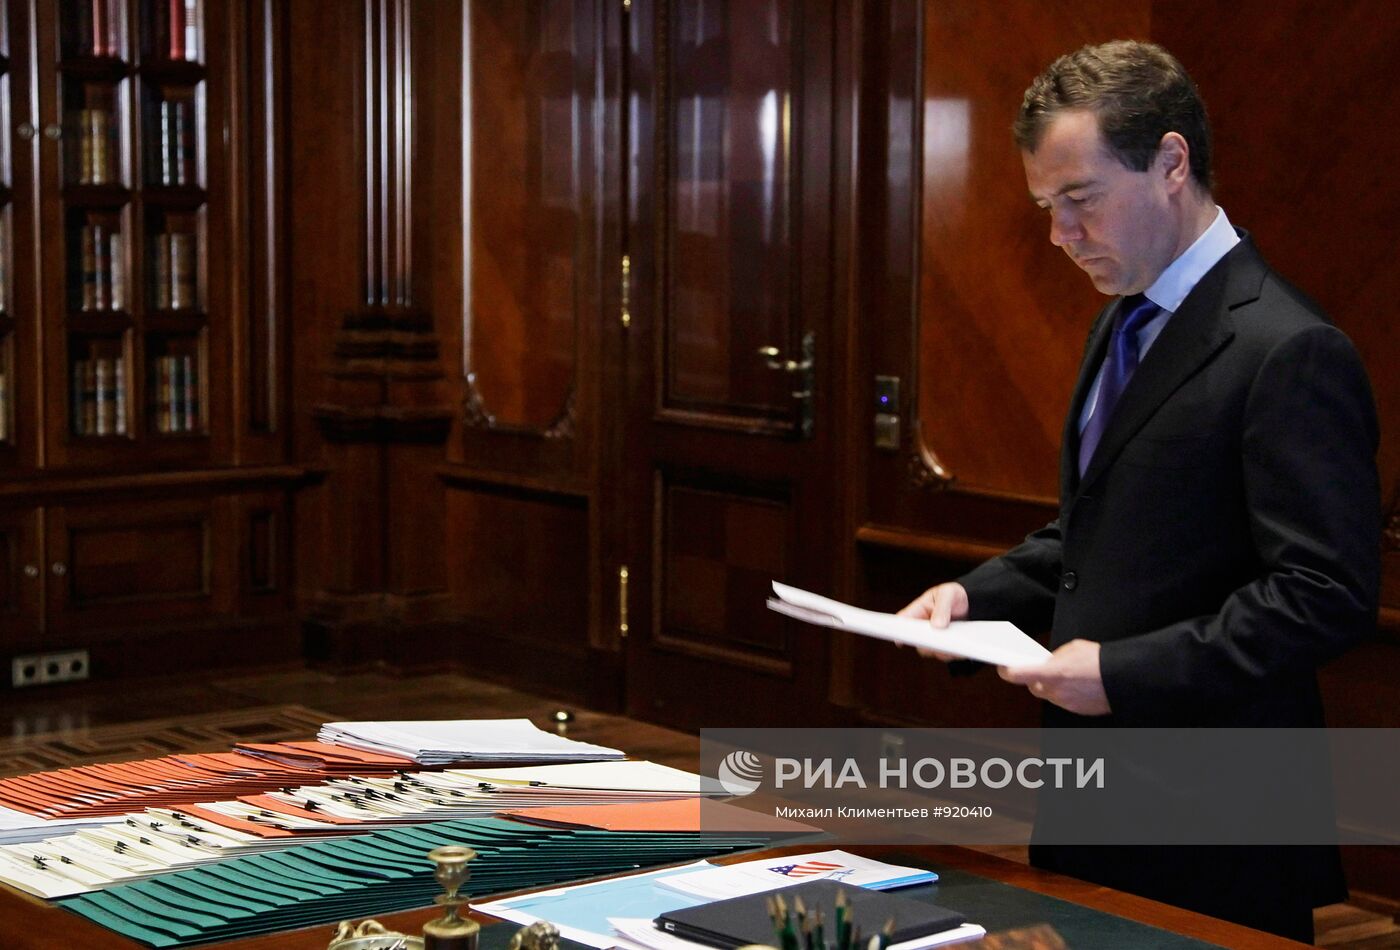 Встреча Дмитрия Медведева с Александром Коноваловым